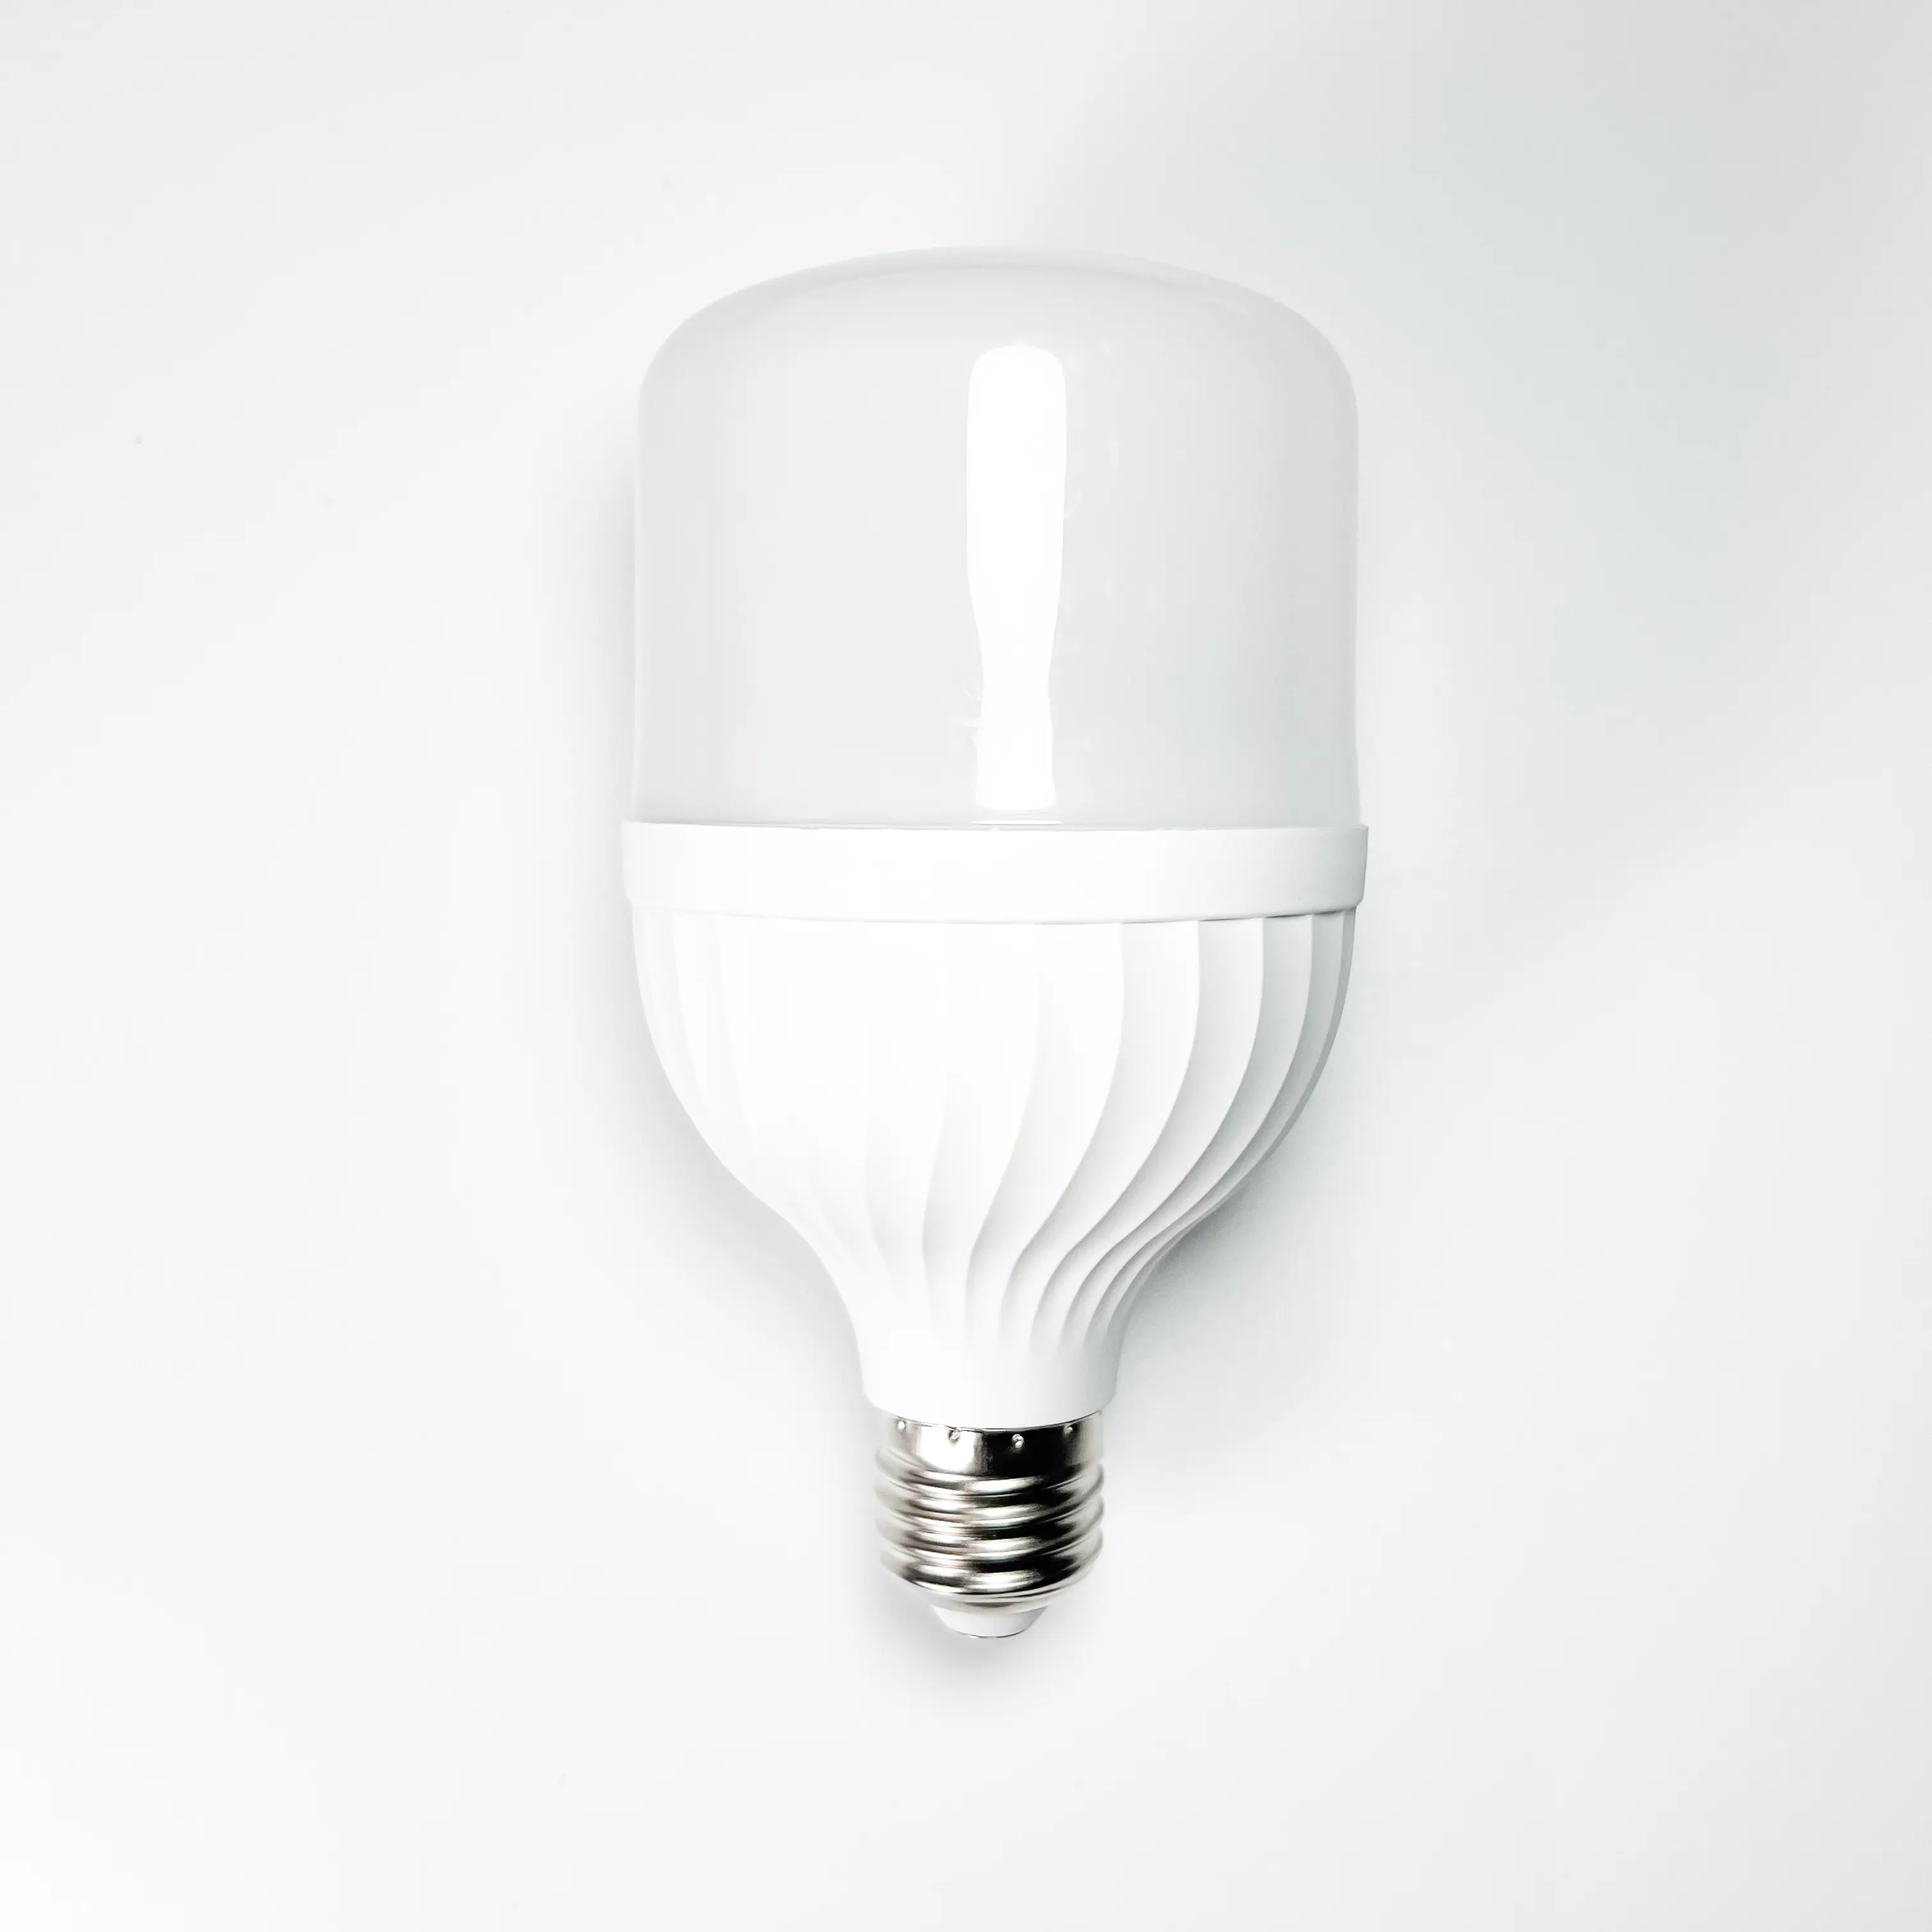 새로운 디자인 T 자형 10W LED 전구/에너지 절약 램프/고휘도 홈 조명 전구 에너지 절약 조명